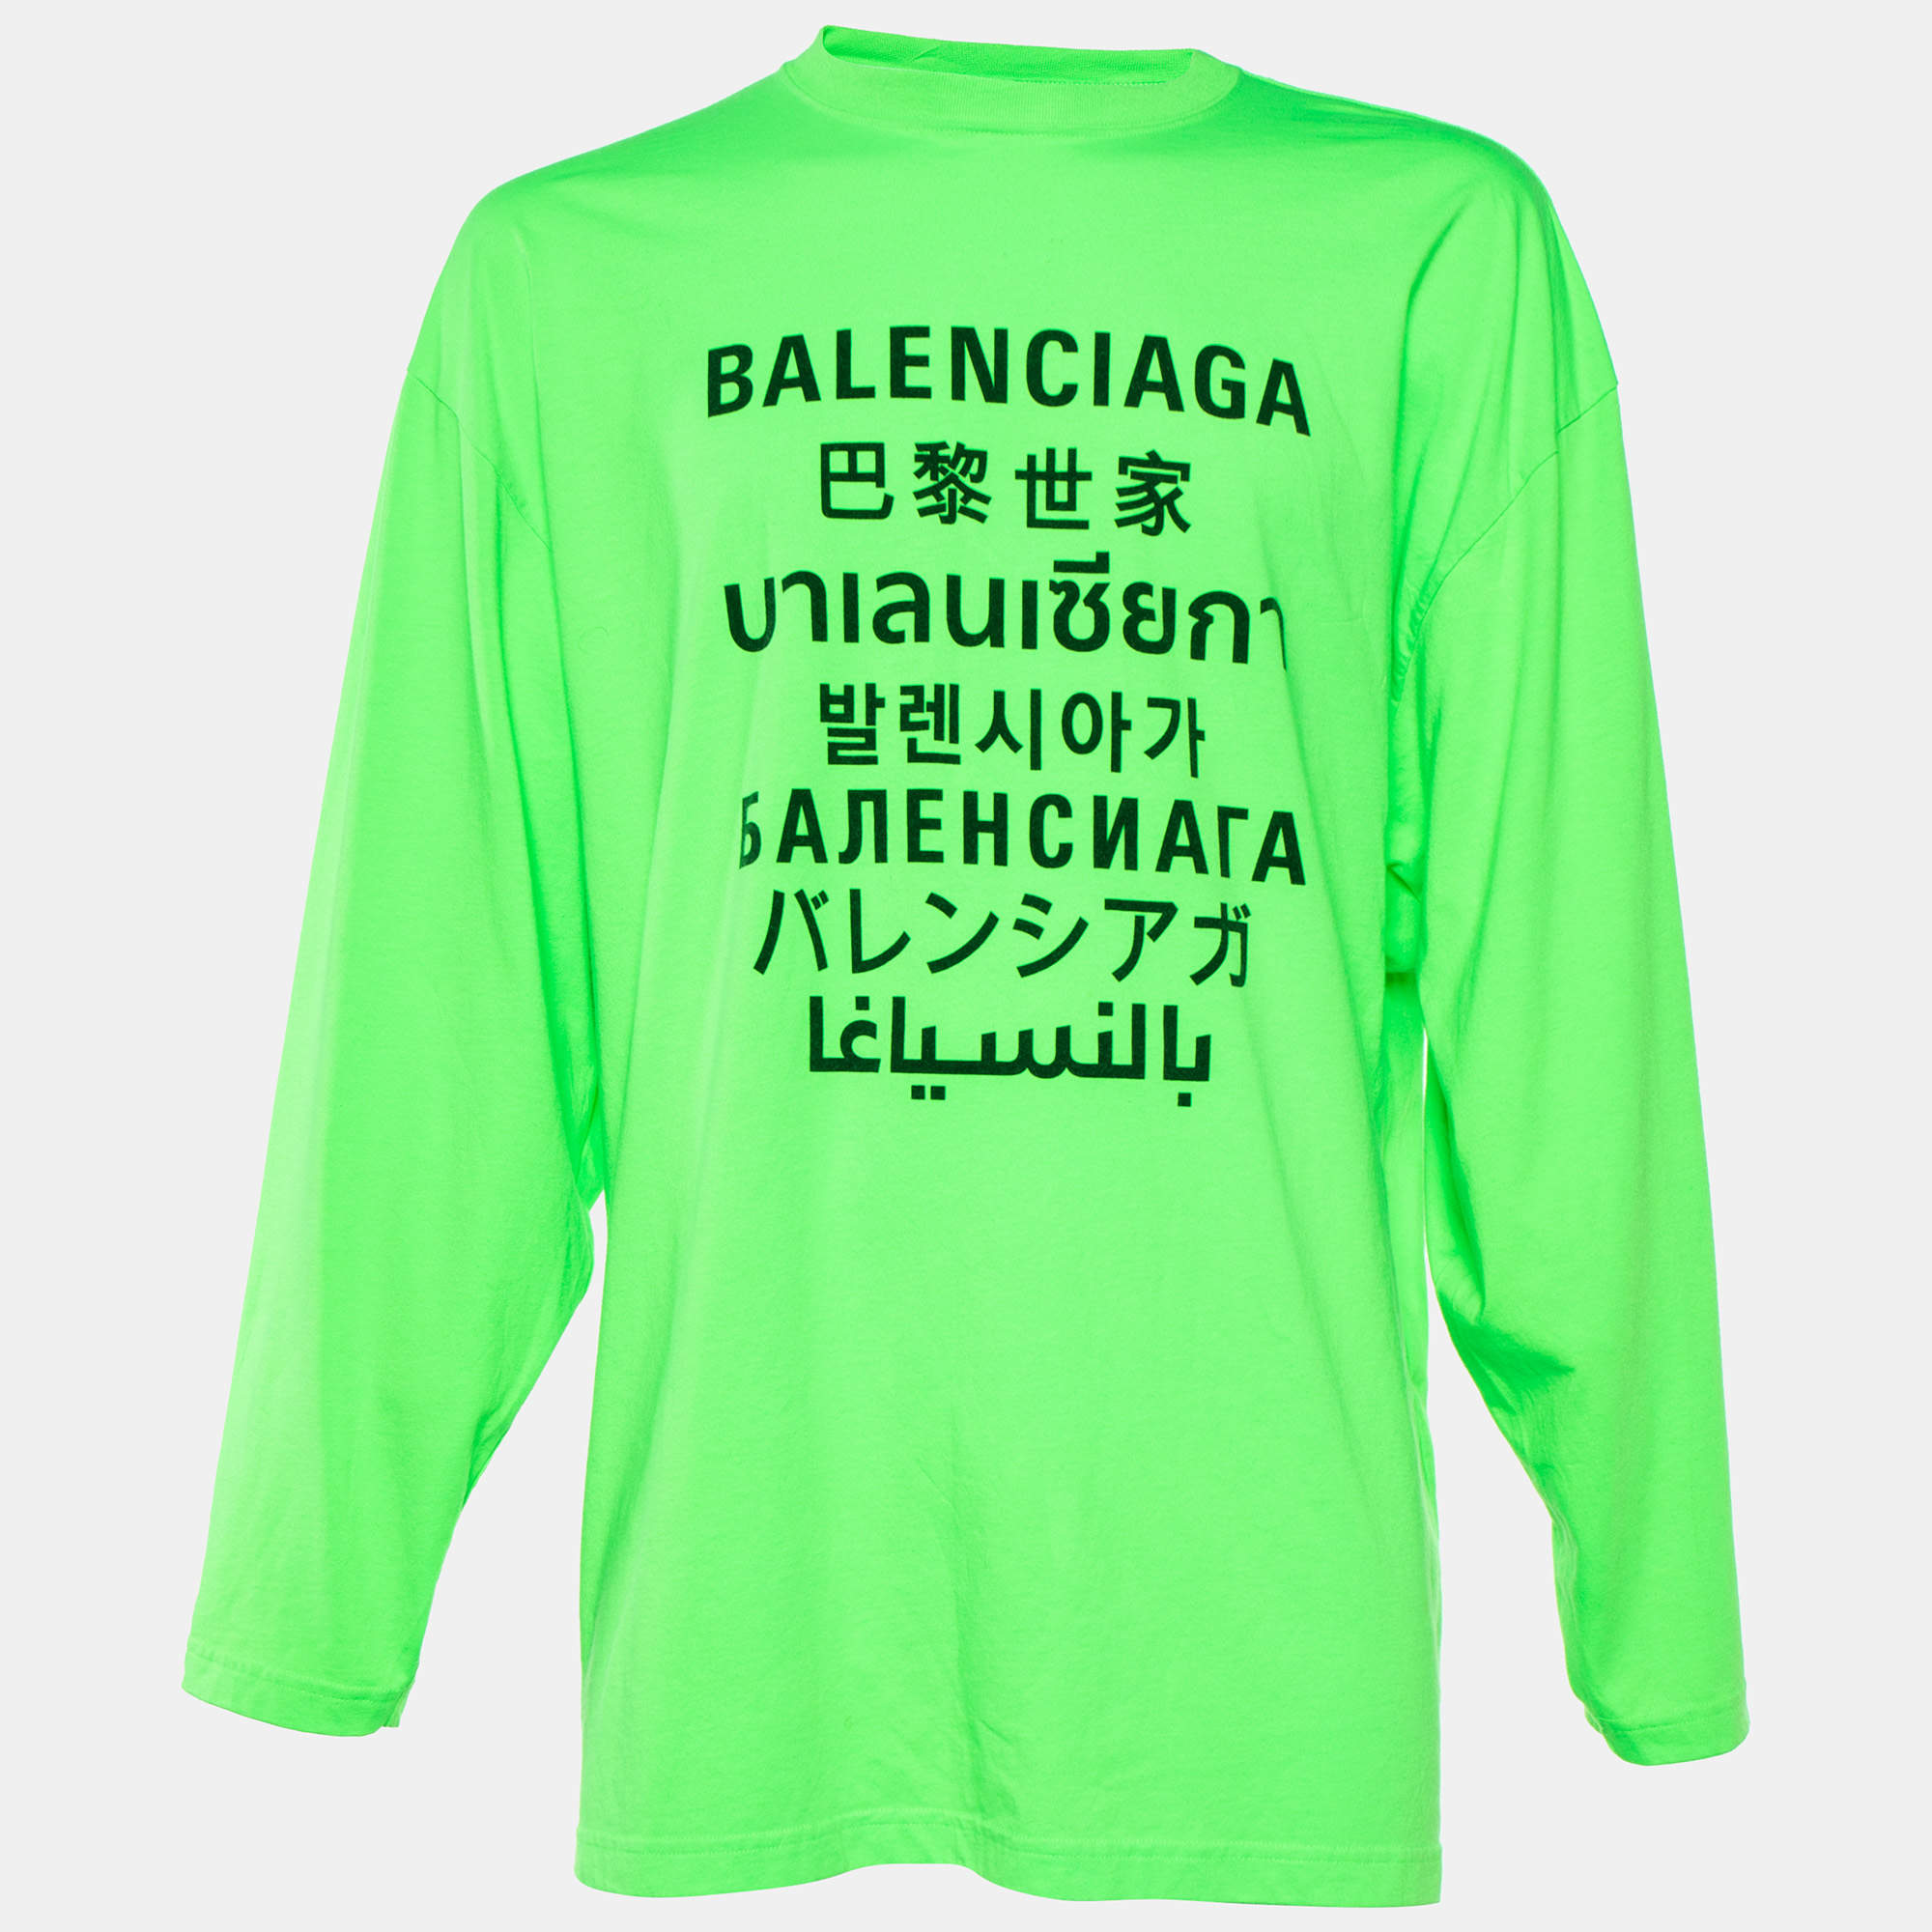 Chi tiết với hơn 67 balenciaga green shirt tuyệt vời nhất  trieuson5